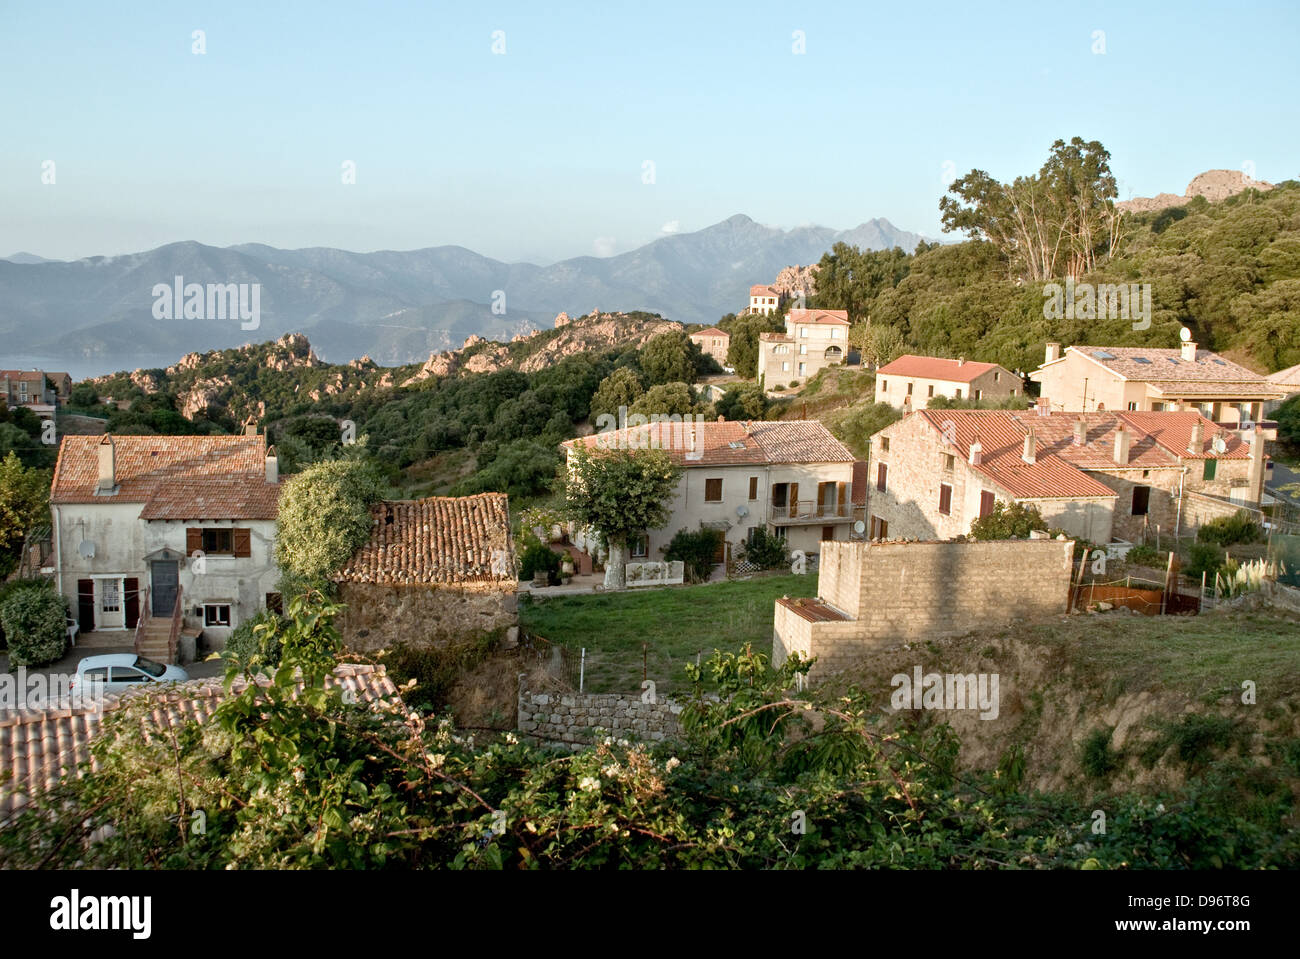 Le village de Piana, située sur la côte ouest de la Corse, France. Banque D'Images